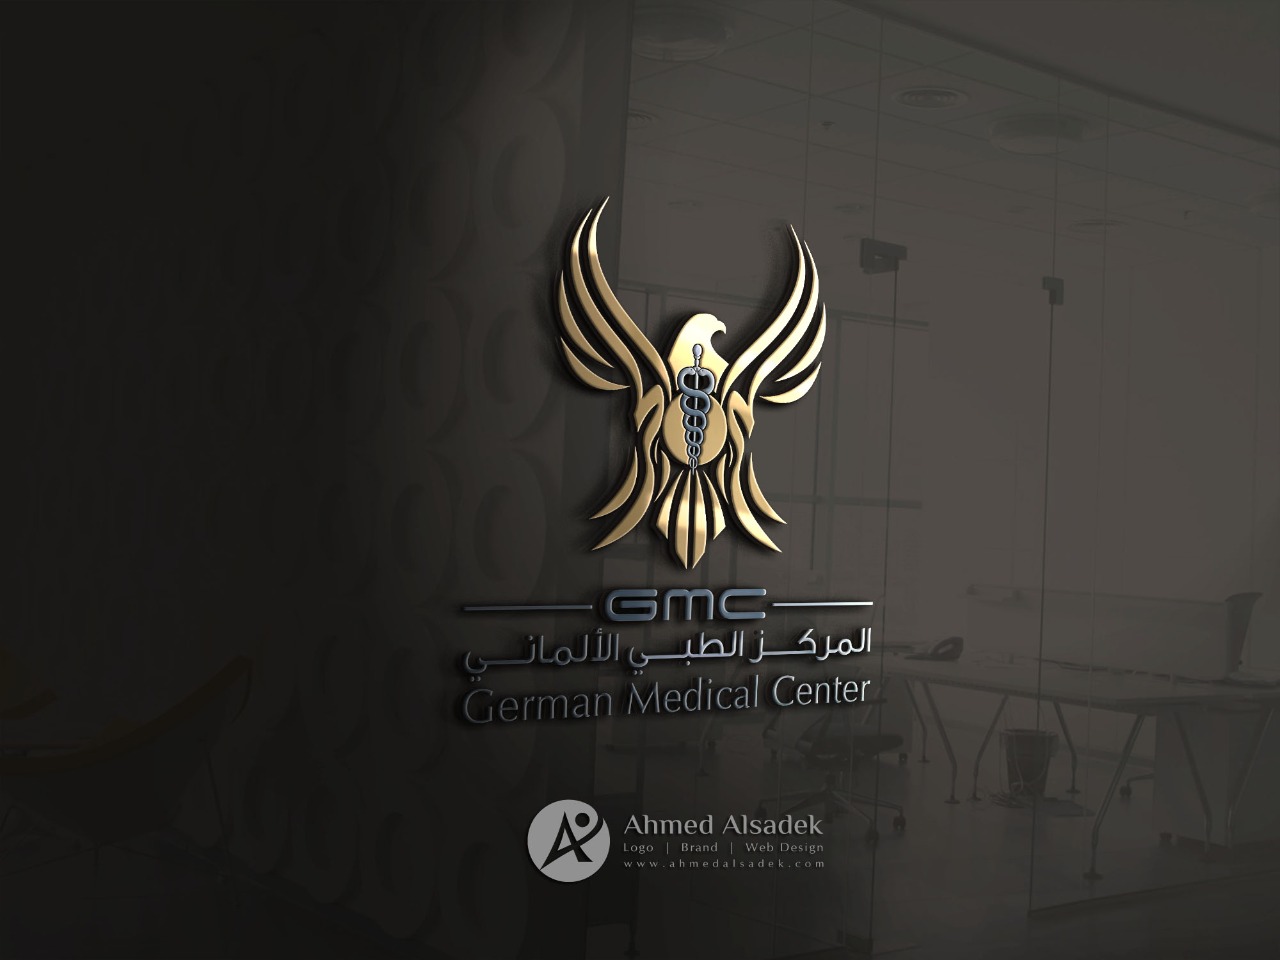 تصميم شعار المركز الطبي الالماني في مسقط - سلطنة عمان 